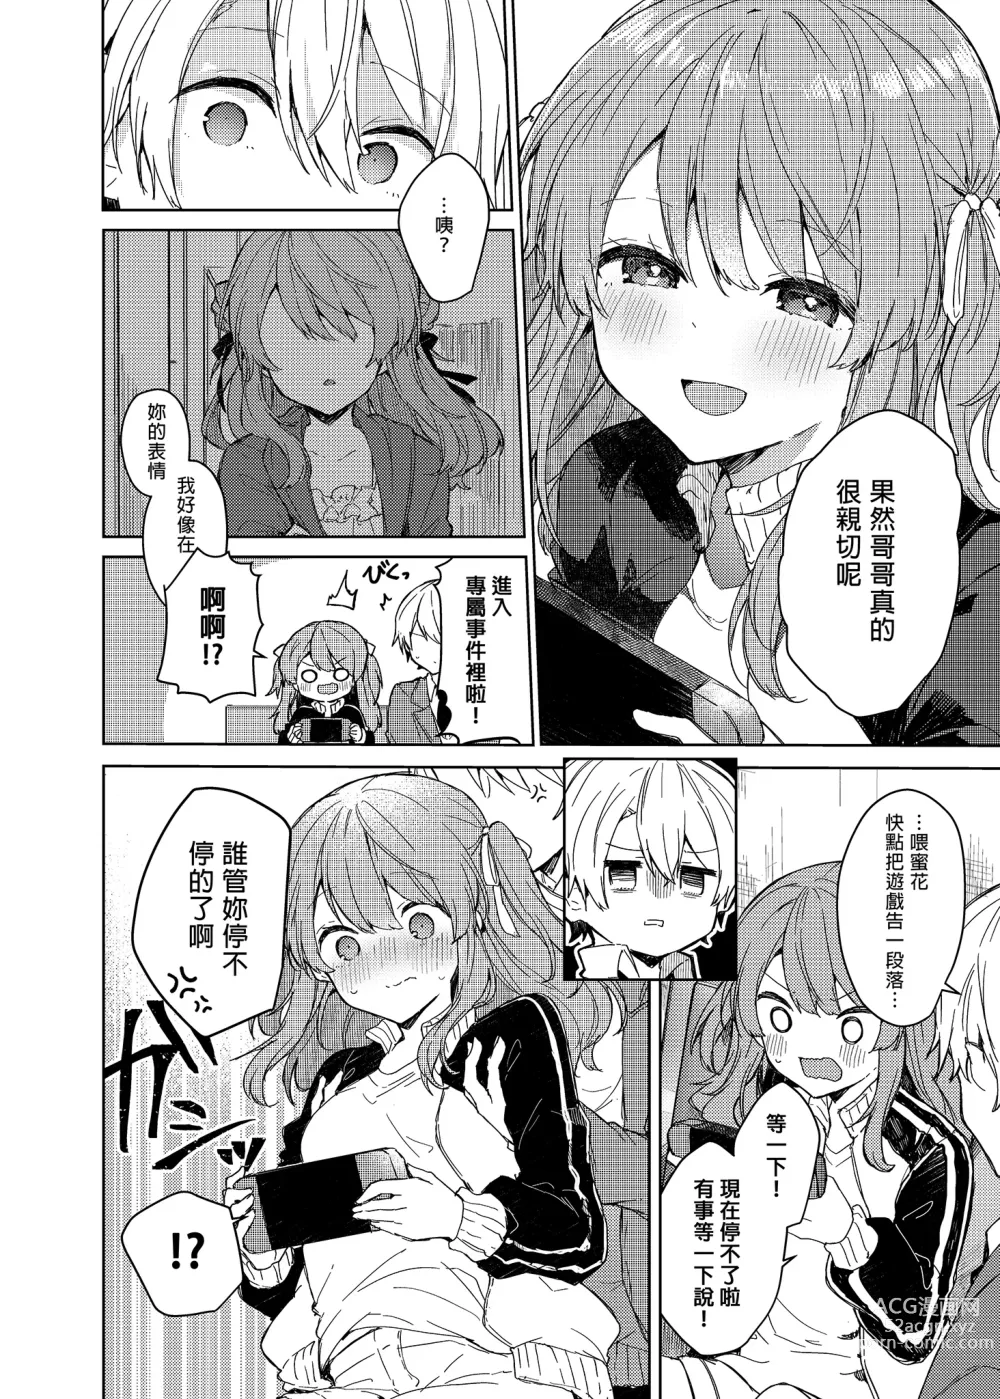 Page 36 of doujinshi 今天開始當個壞孩子。 (decensored)